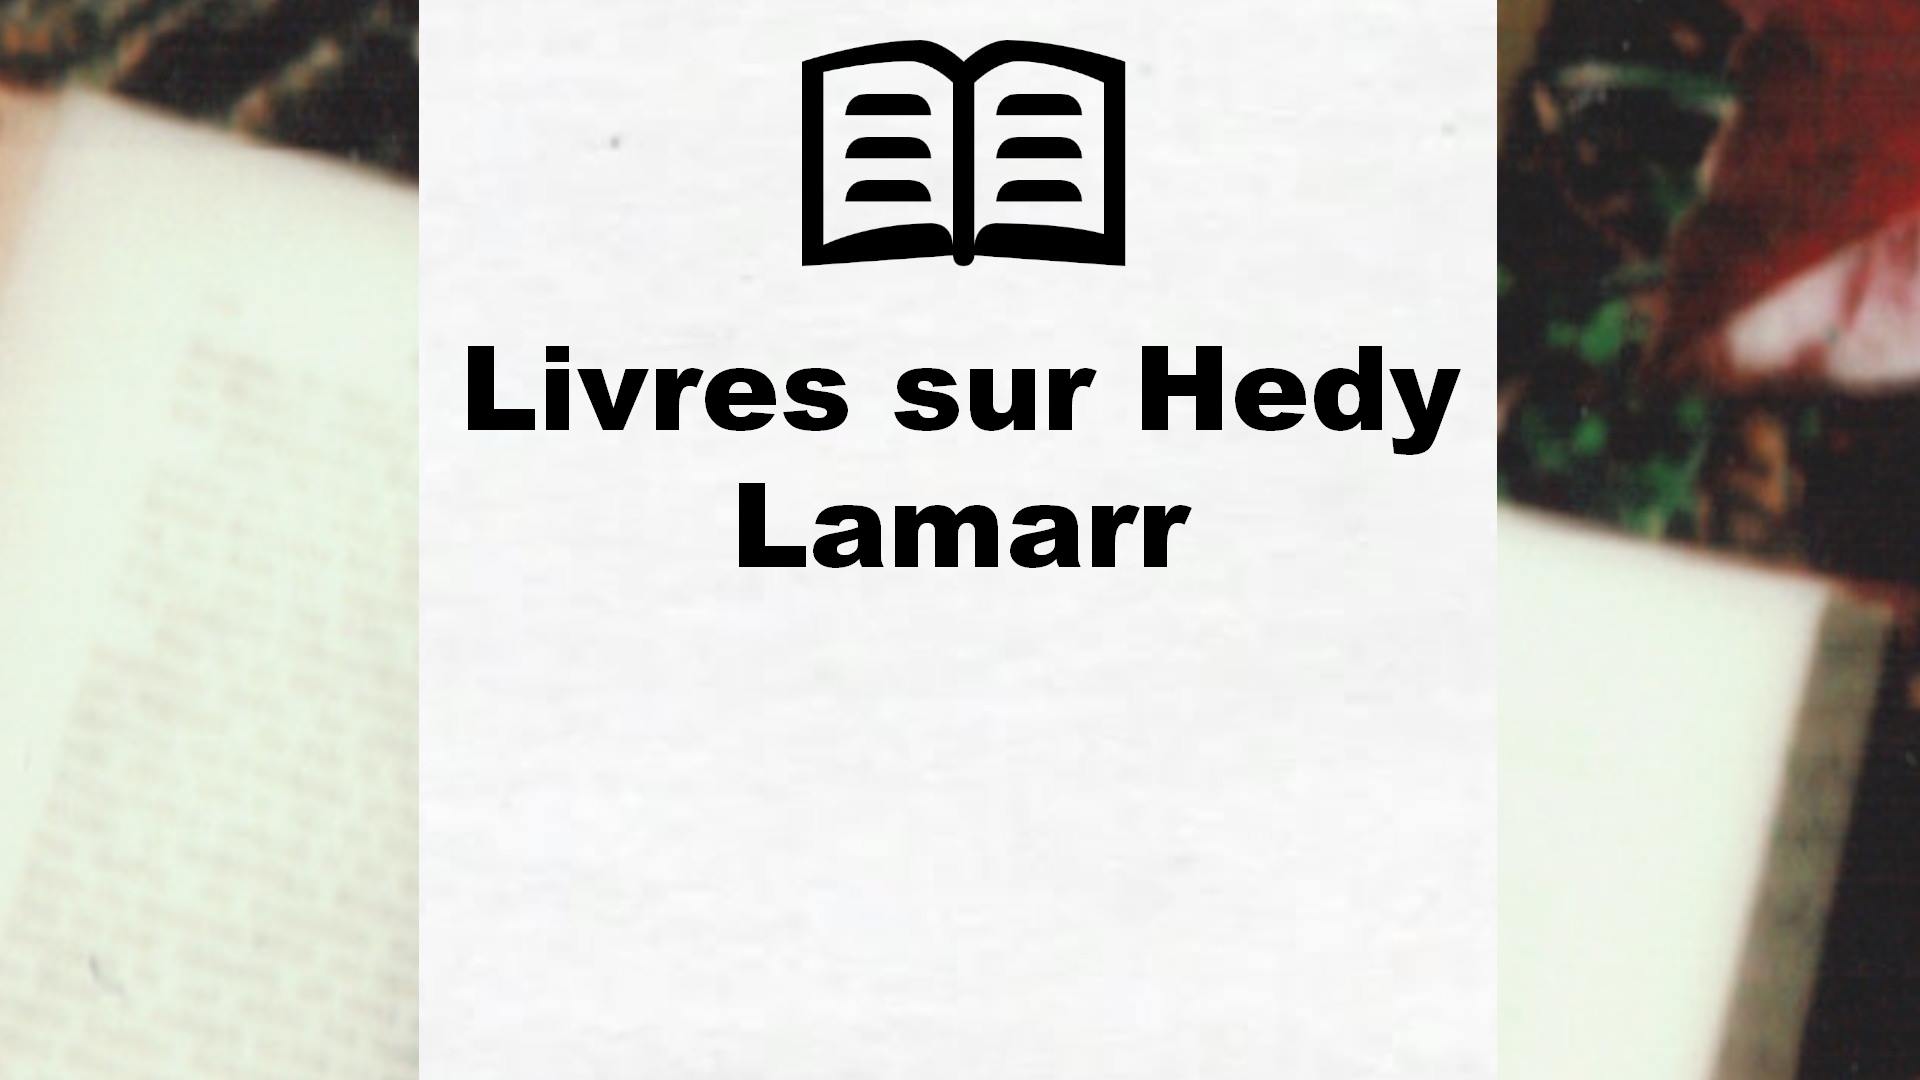 Livres sur Hedy Lamarr